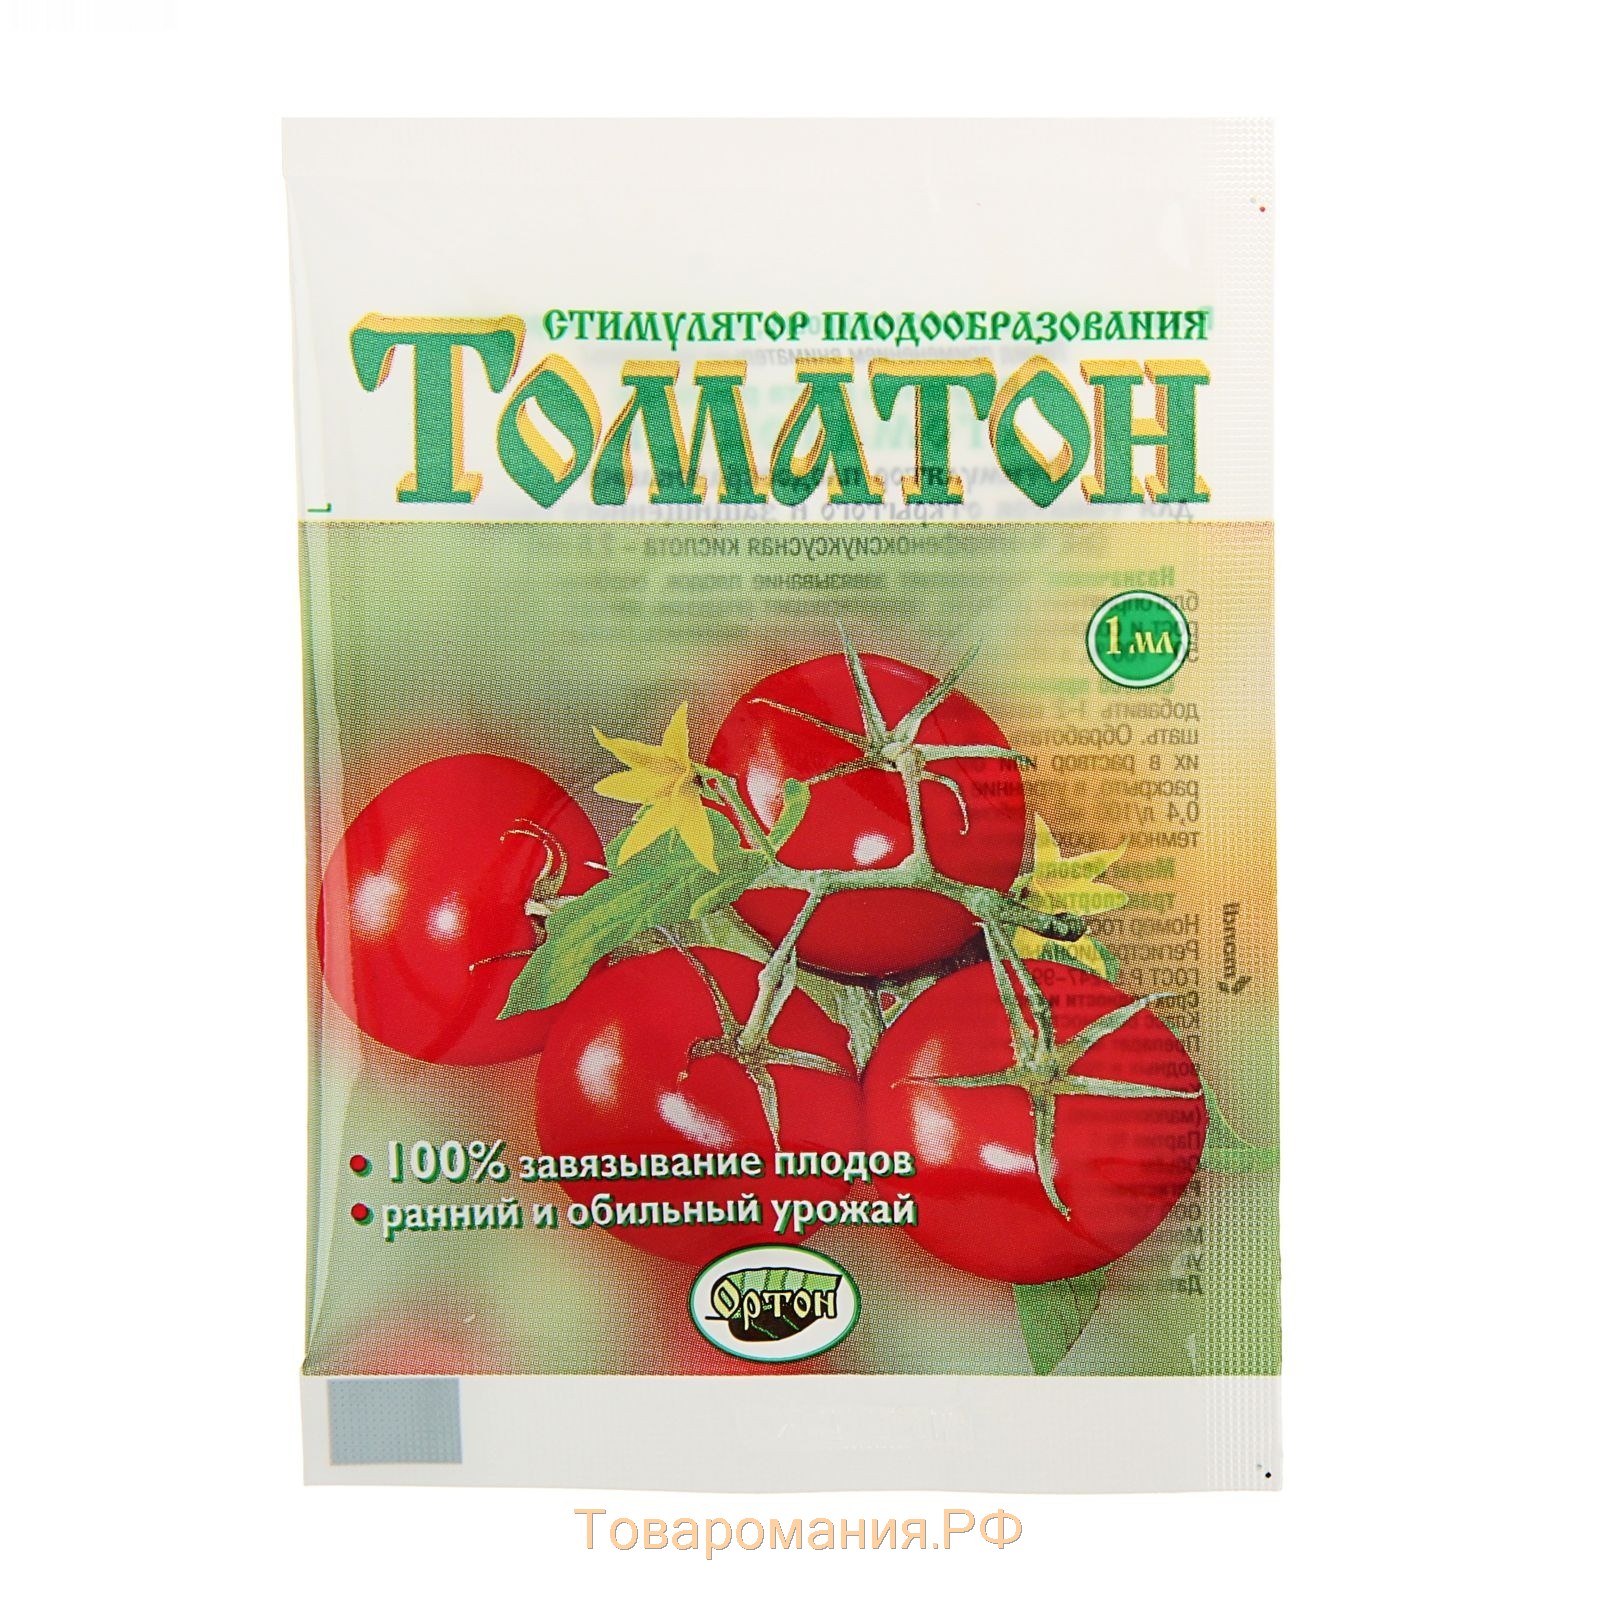 Стимулятор роста для рассады томатов